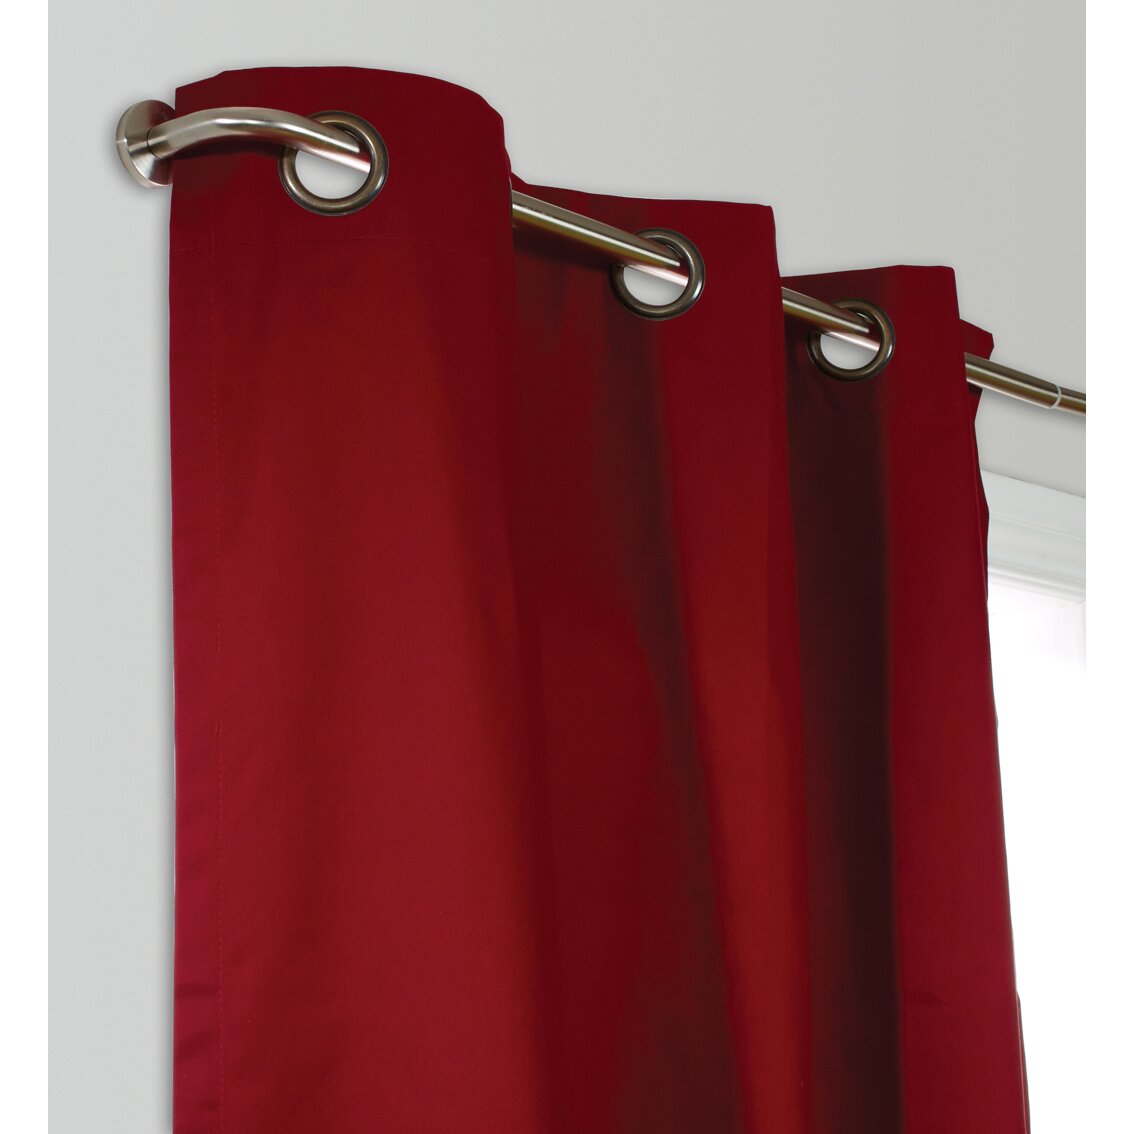 wraparound curtain rod